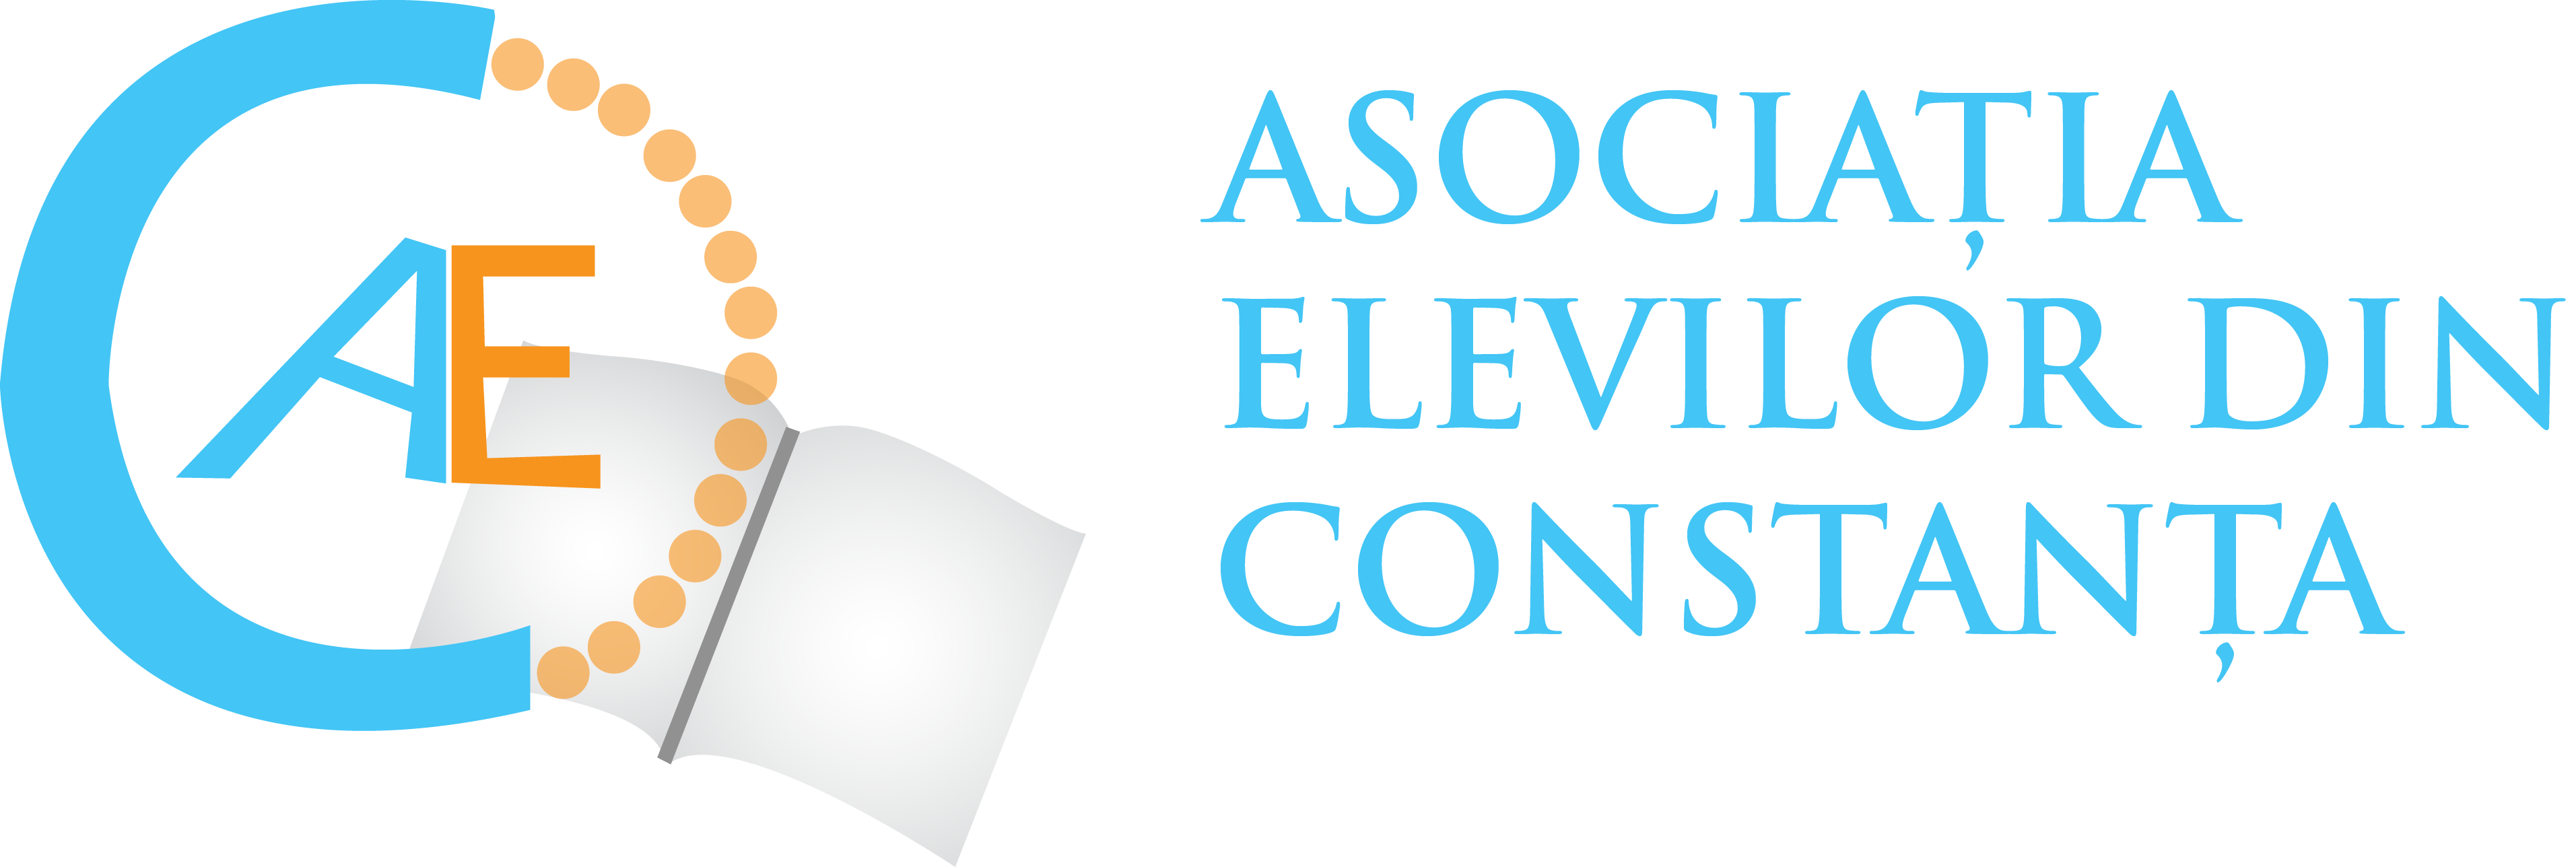 Asociația Elevilor din Constanța logo